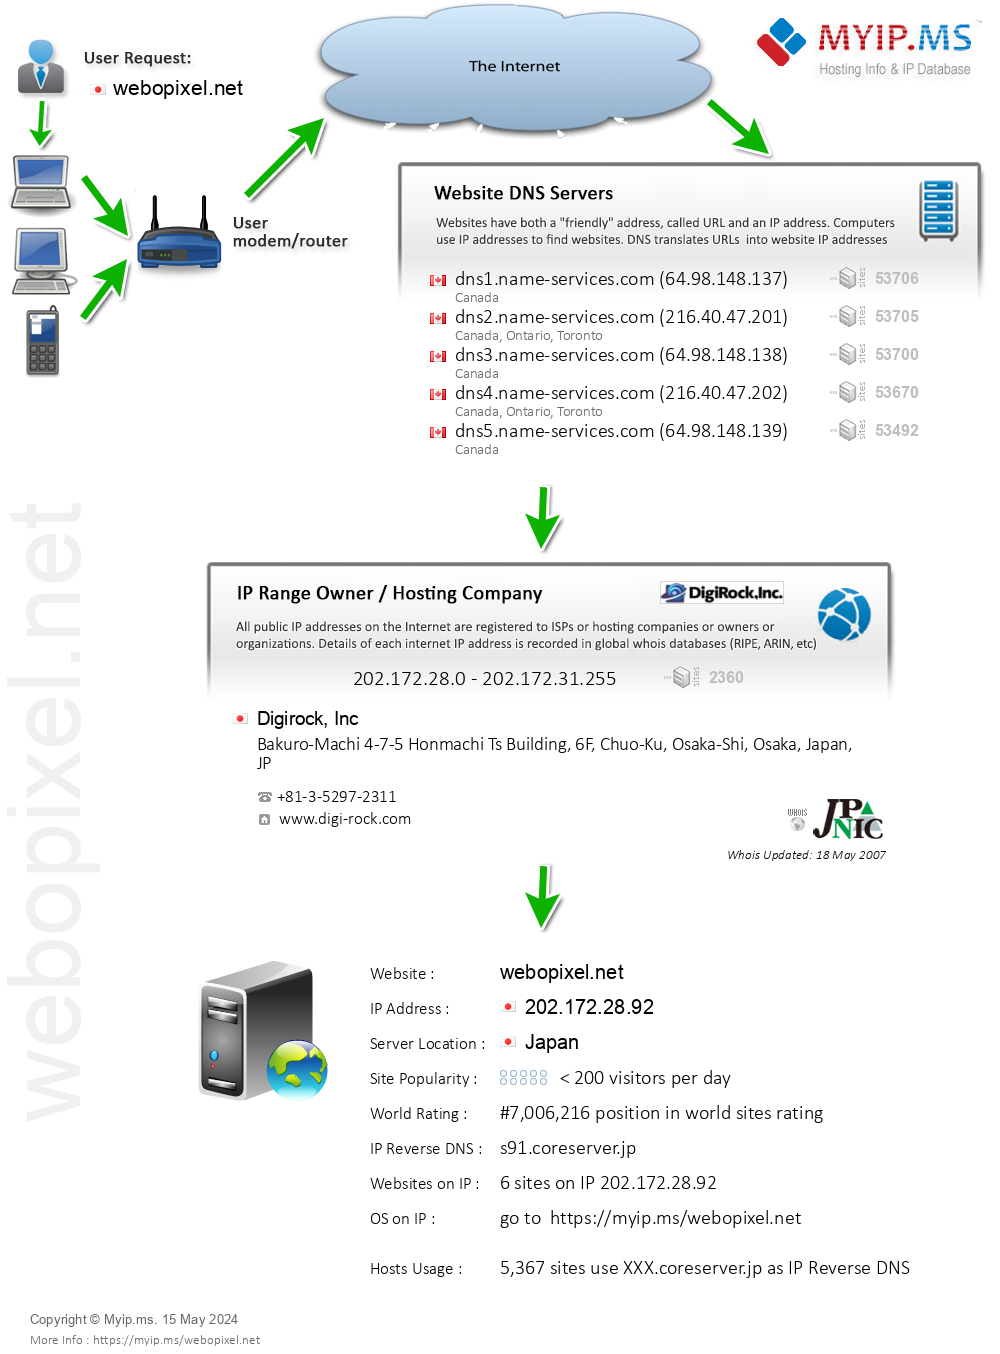 Webopixel.net - Website Hosting Visual IP Diagram